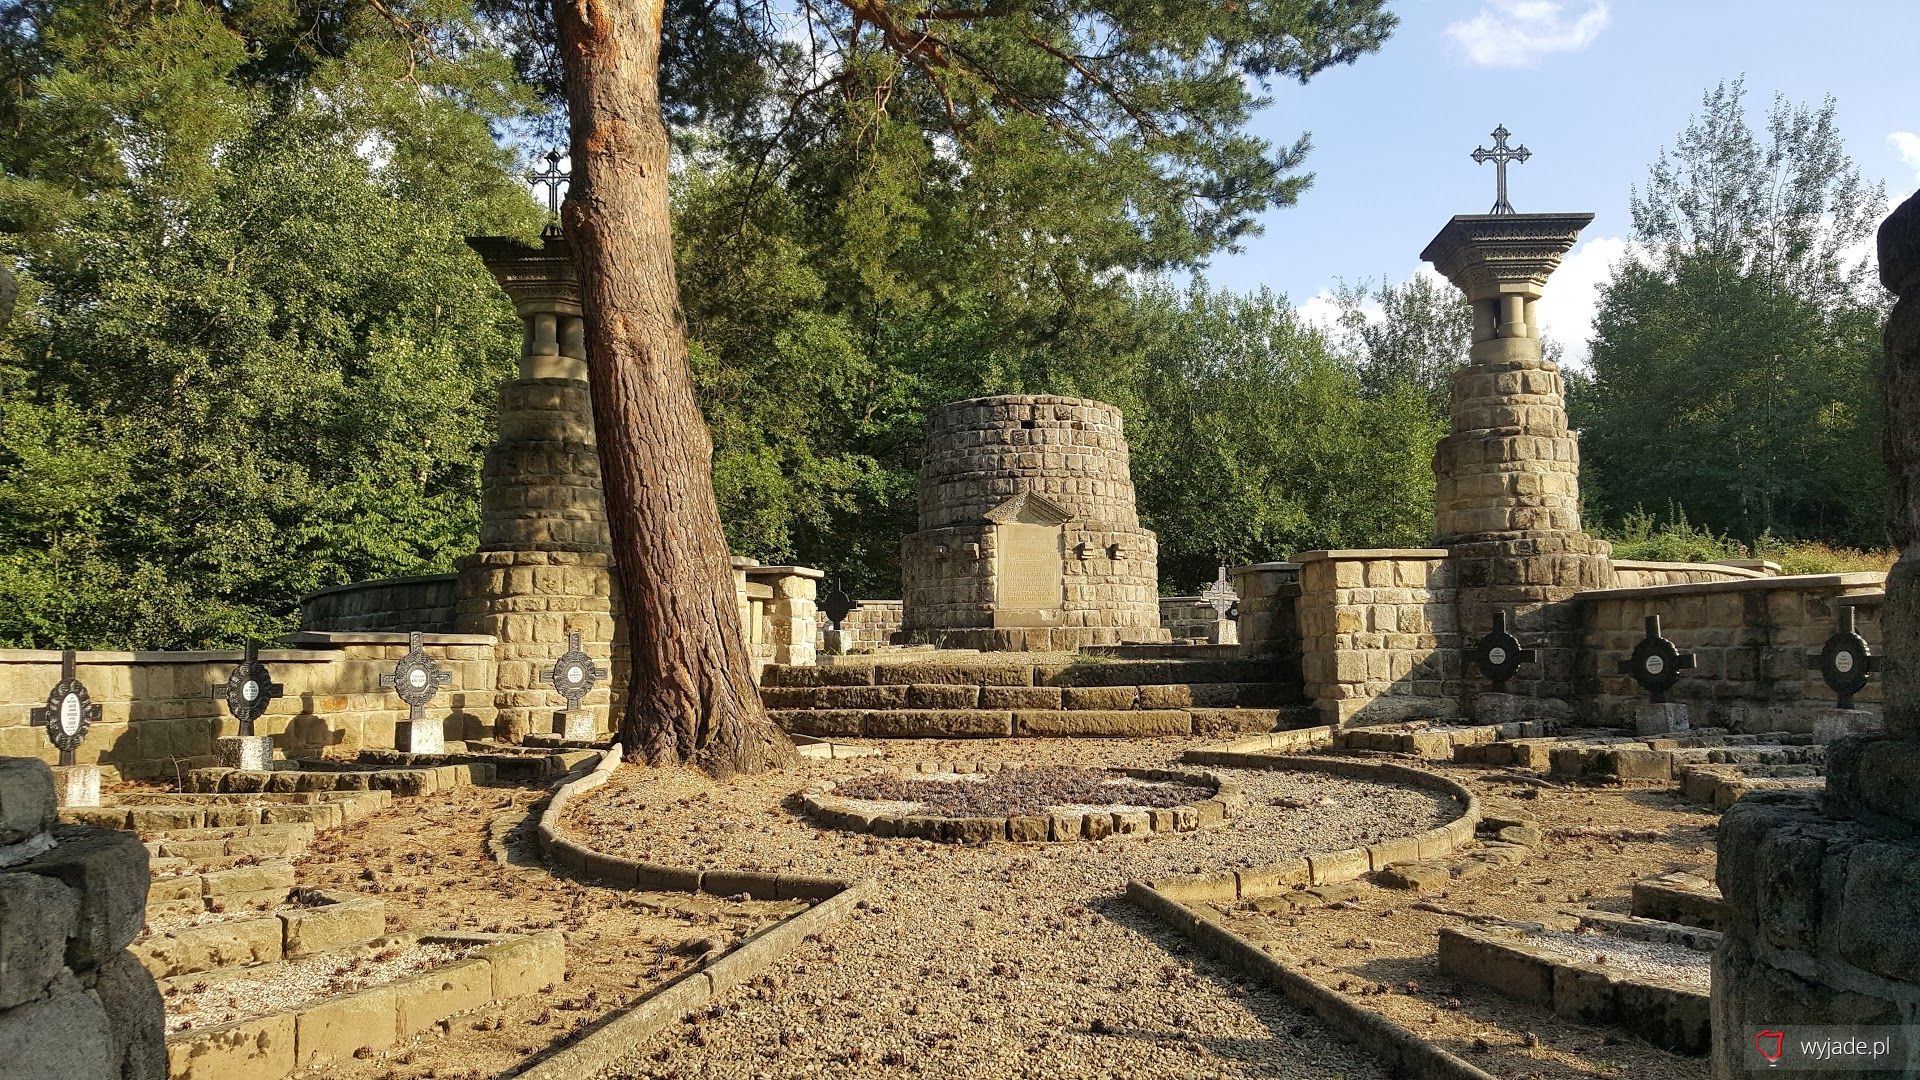 Cemetery in Wola Cieklińska